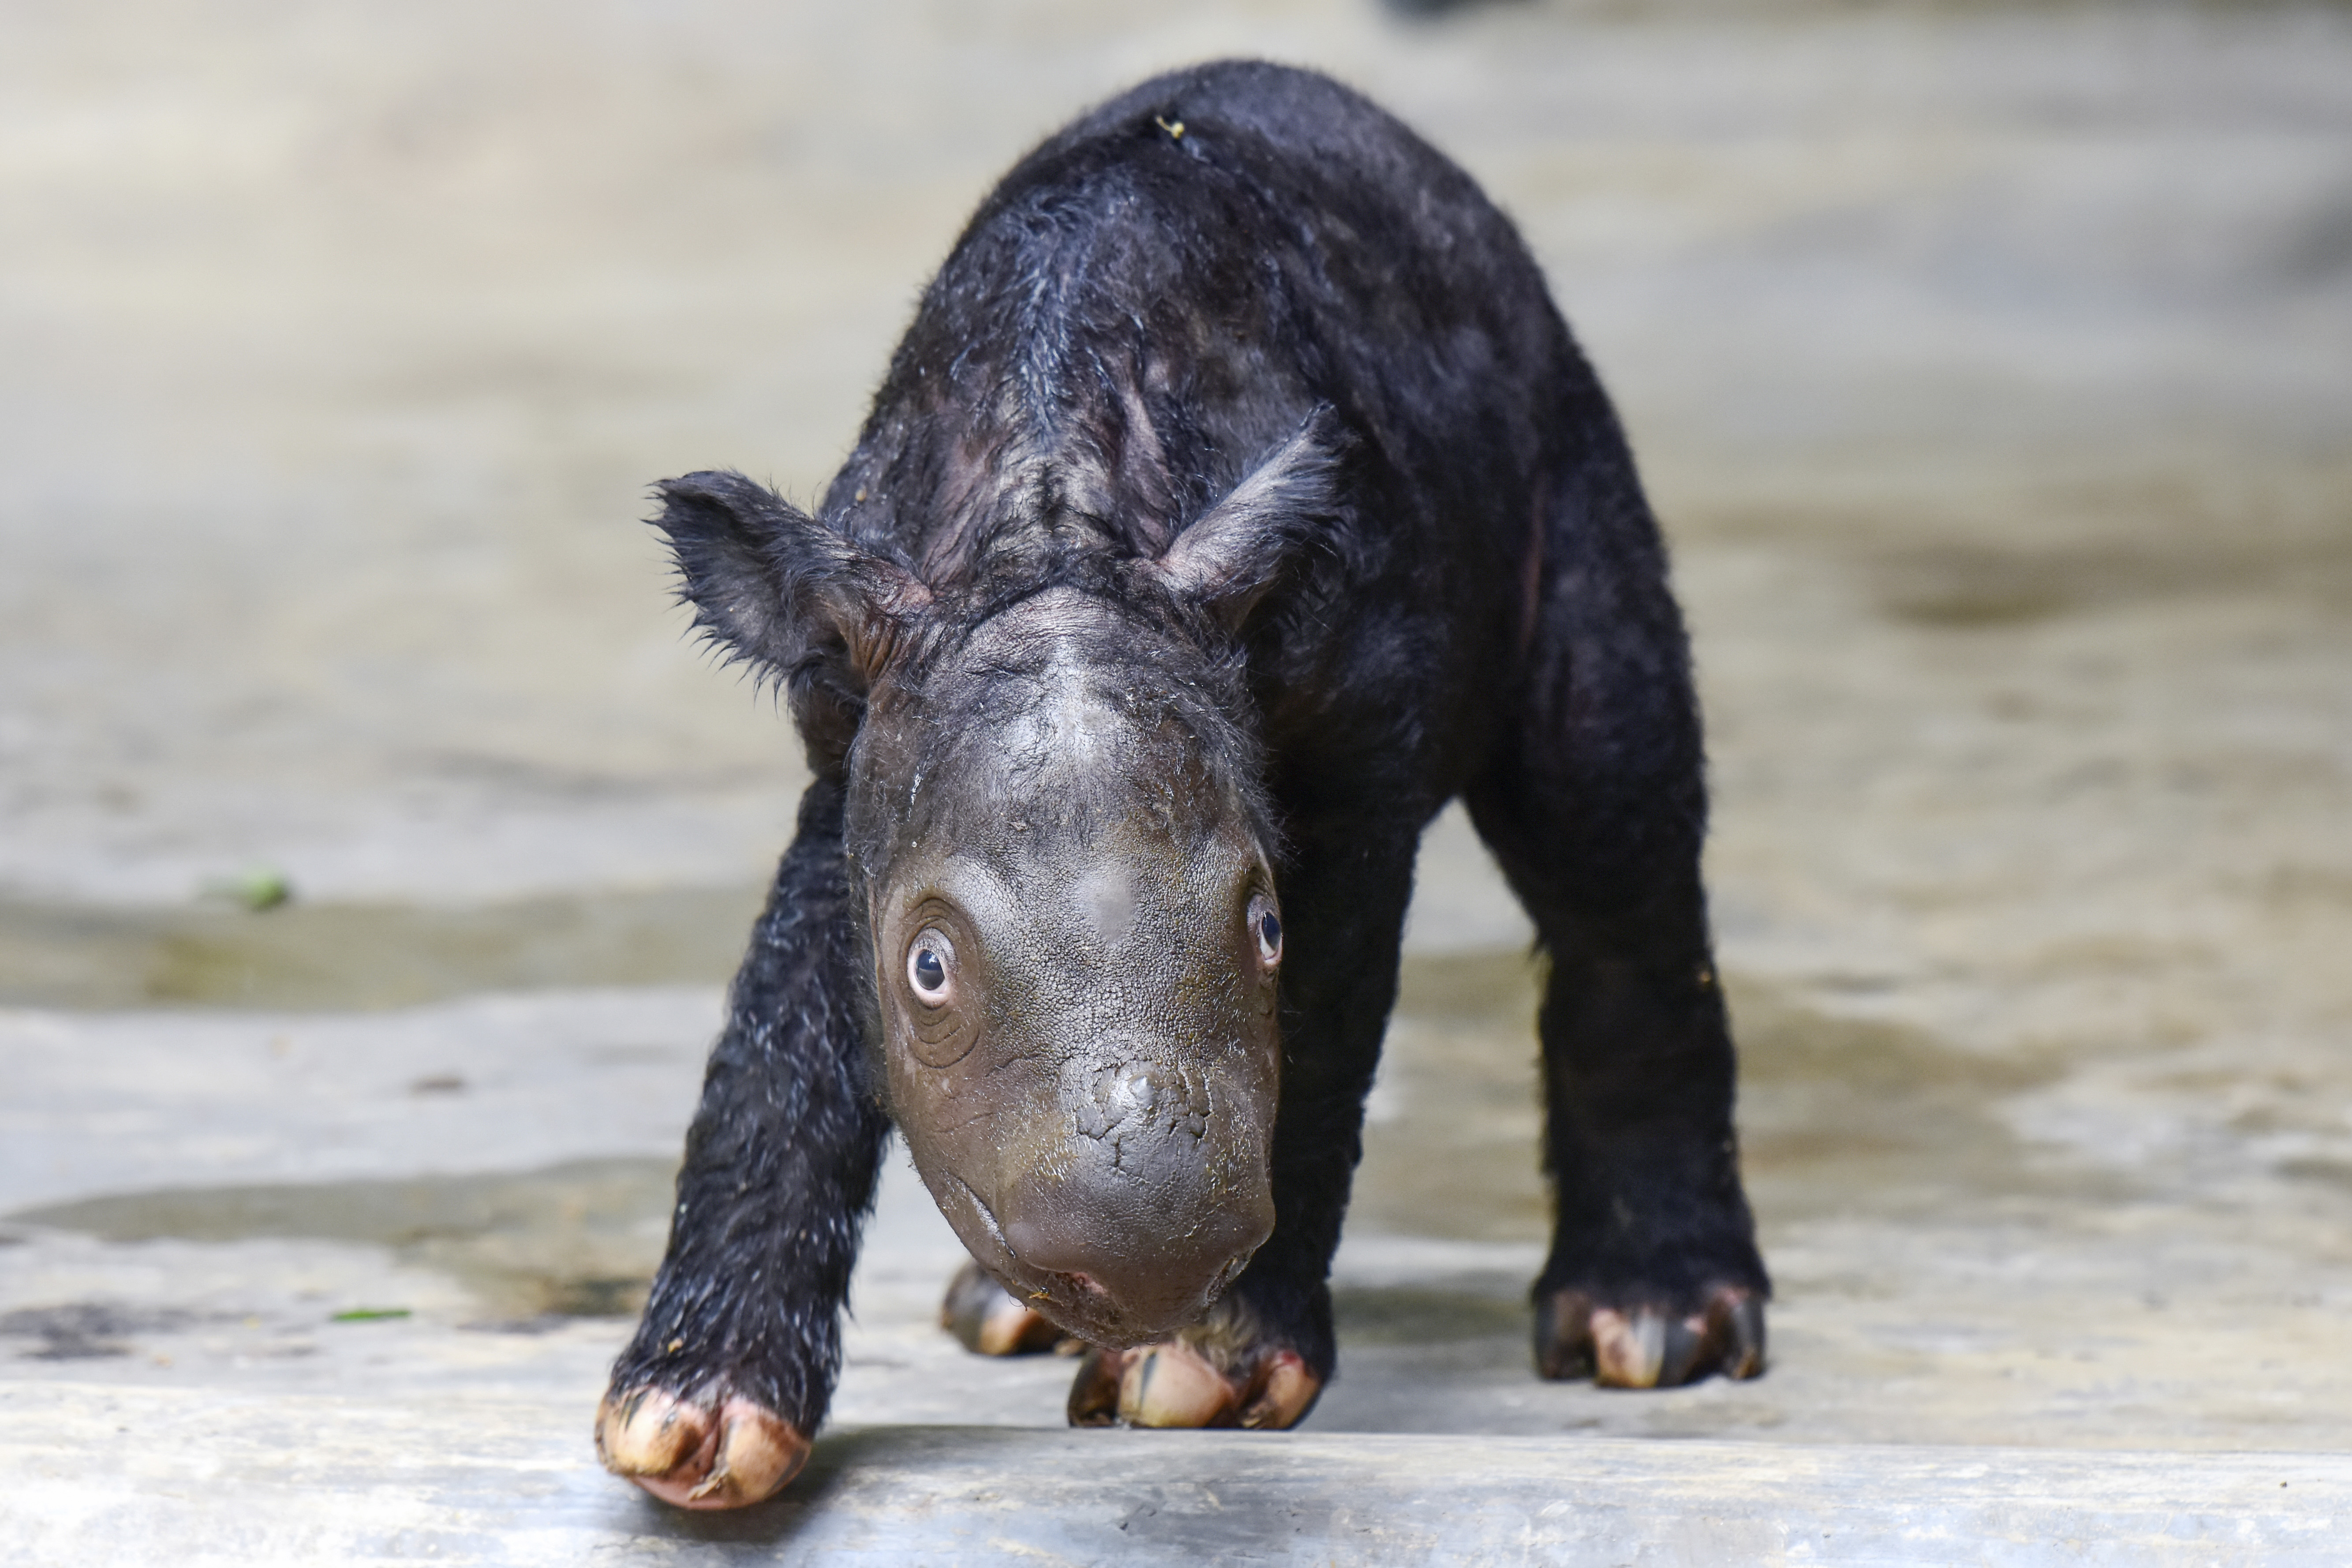 A Sumatran rhino calf born in Indonesia adds to an endangered